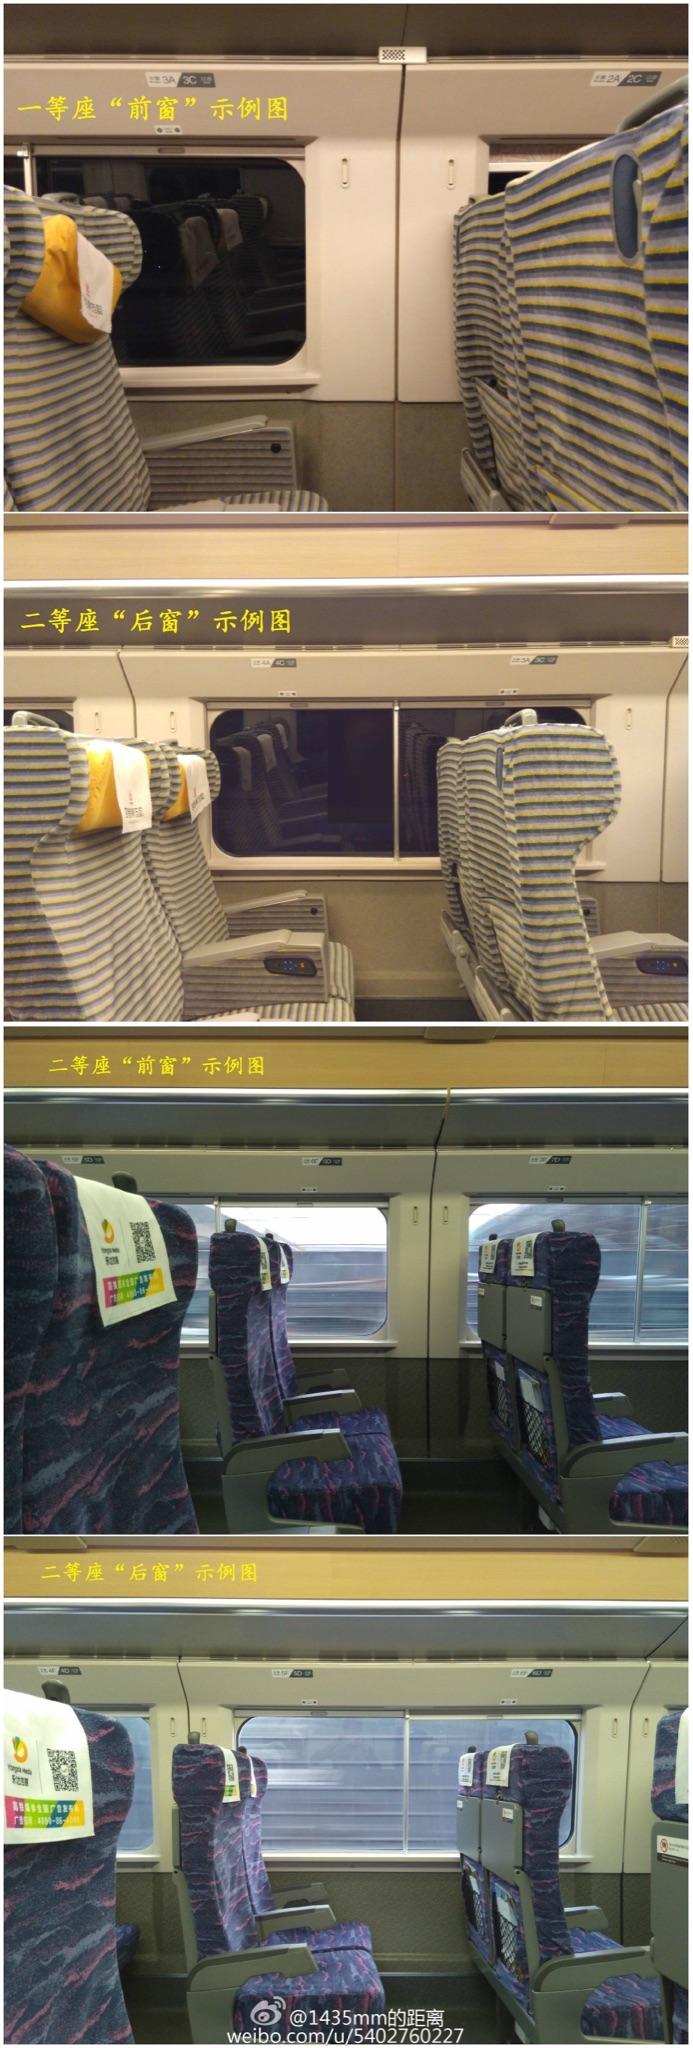 高铁一等座座位号图片图片